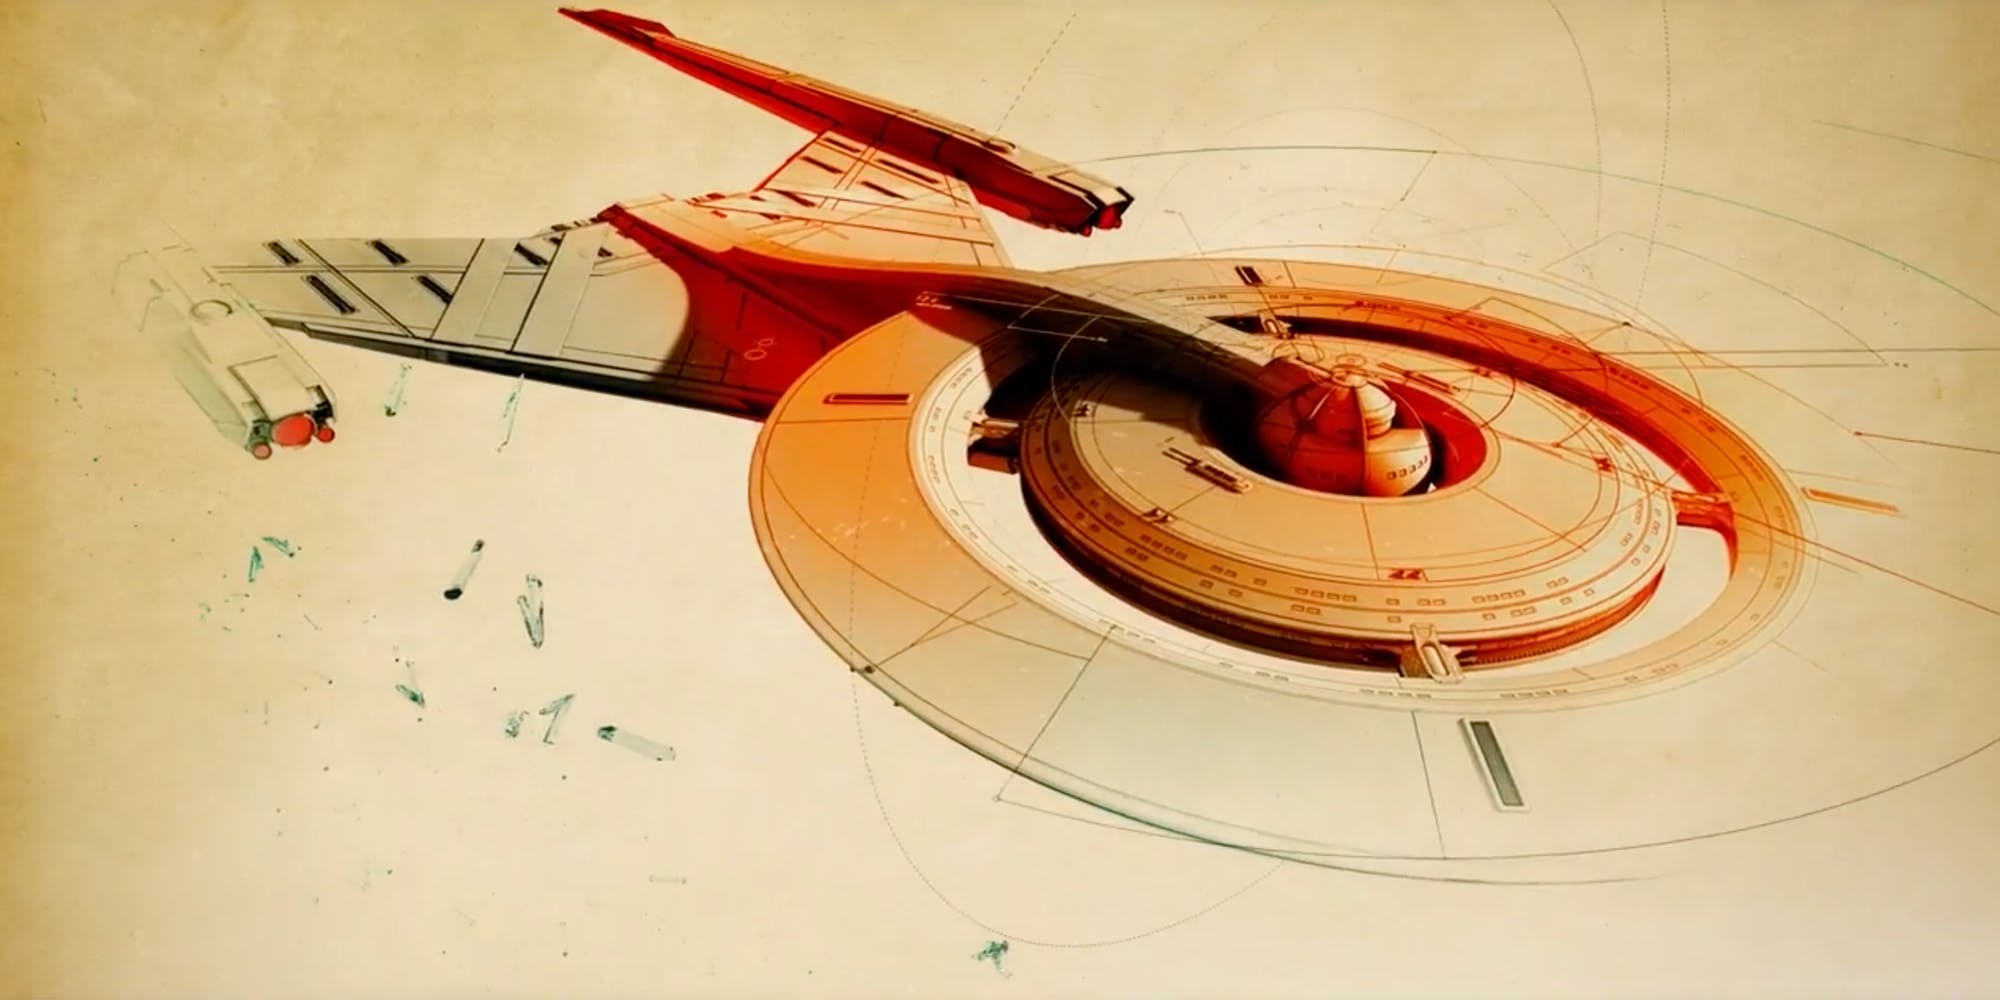 Melhores papéis de parede de Star Trek: Discovery para tela do telefone